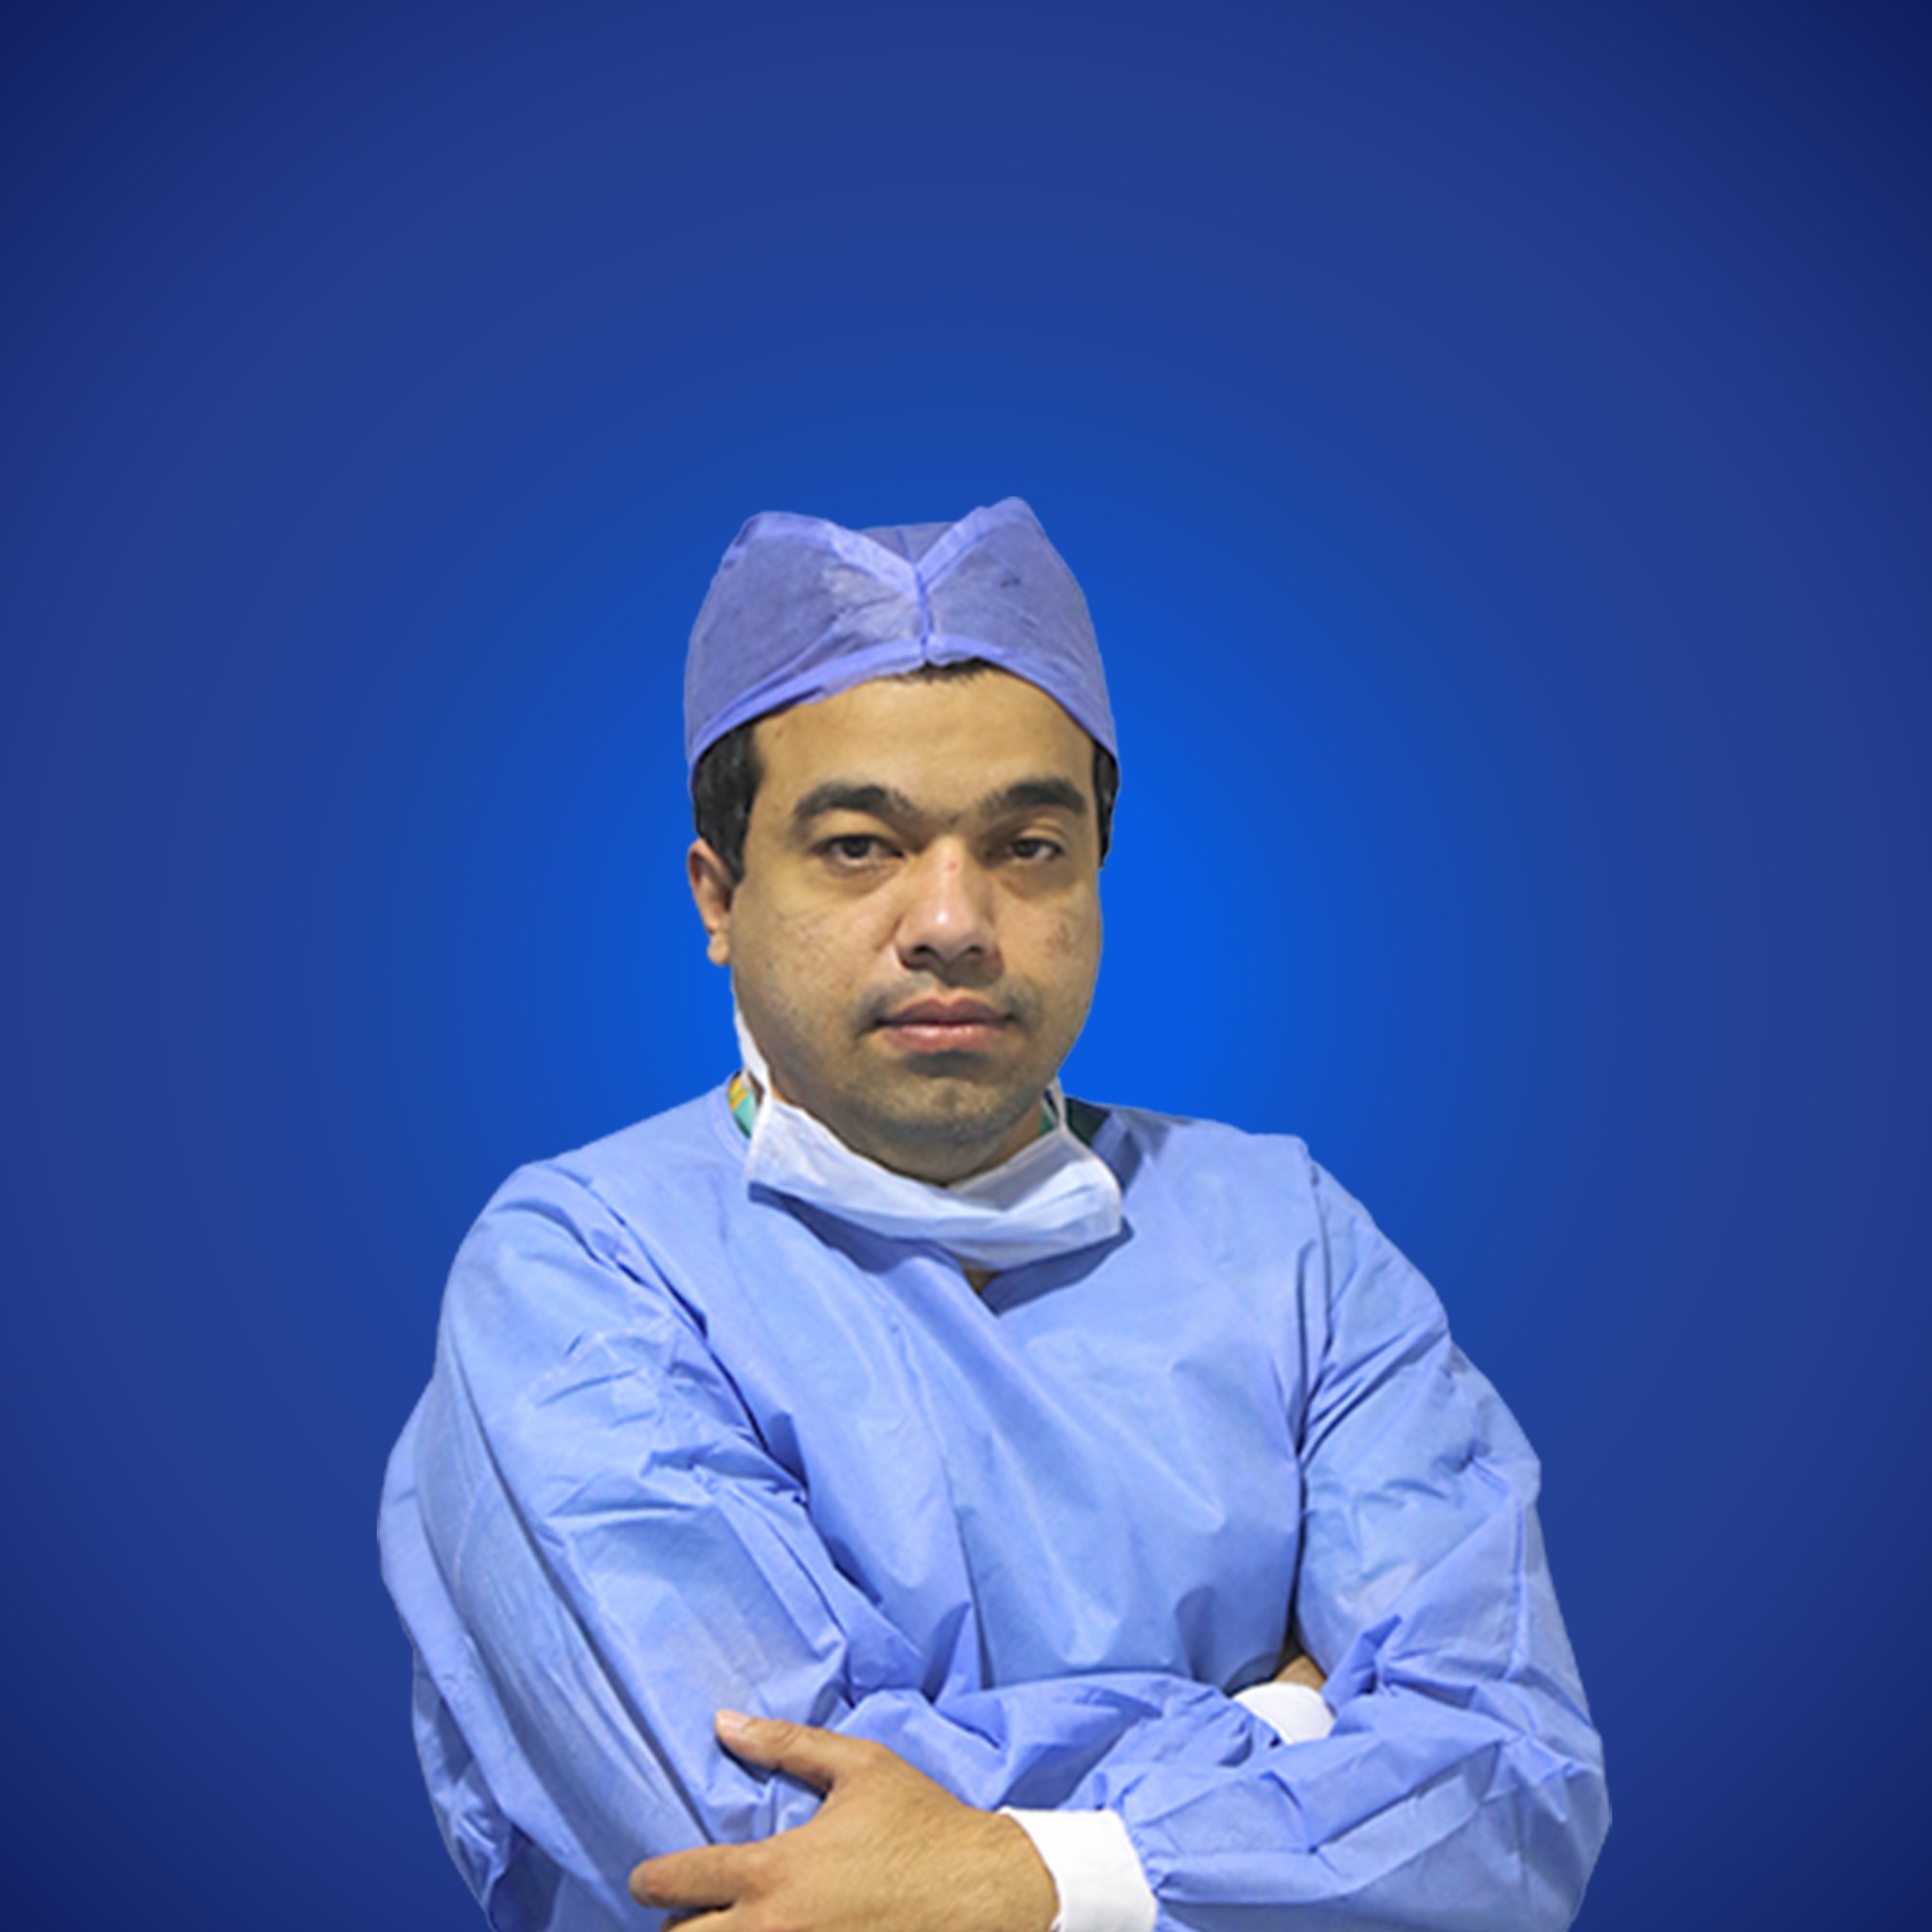 Dr. Mohamed Al Atrash